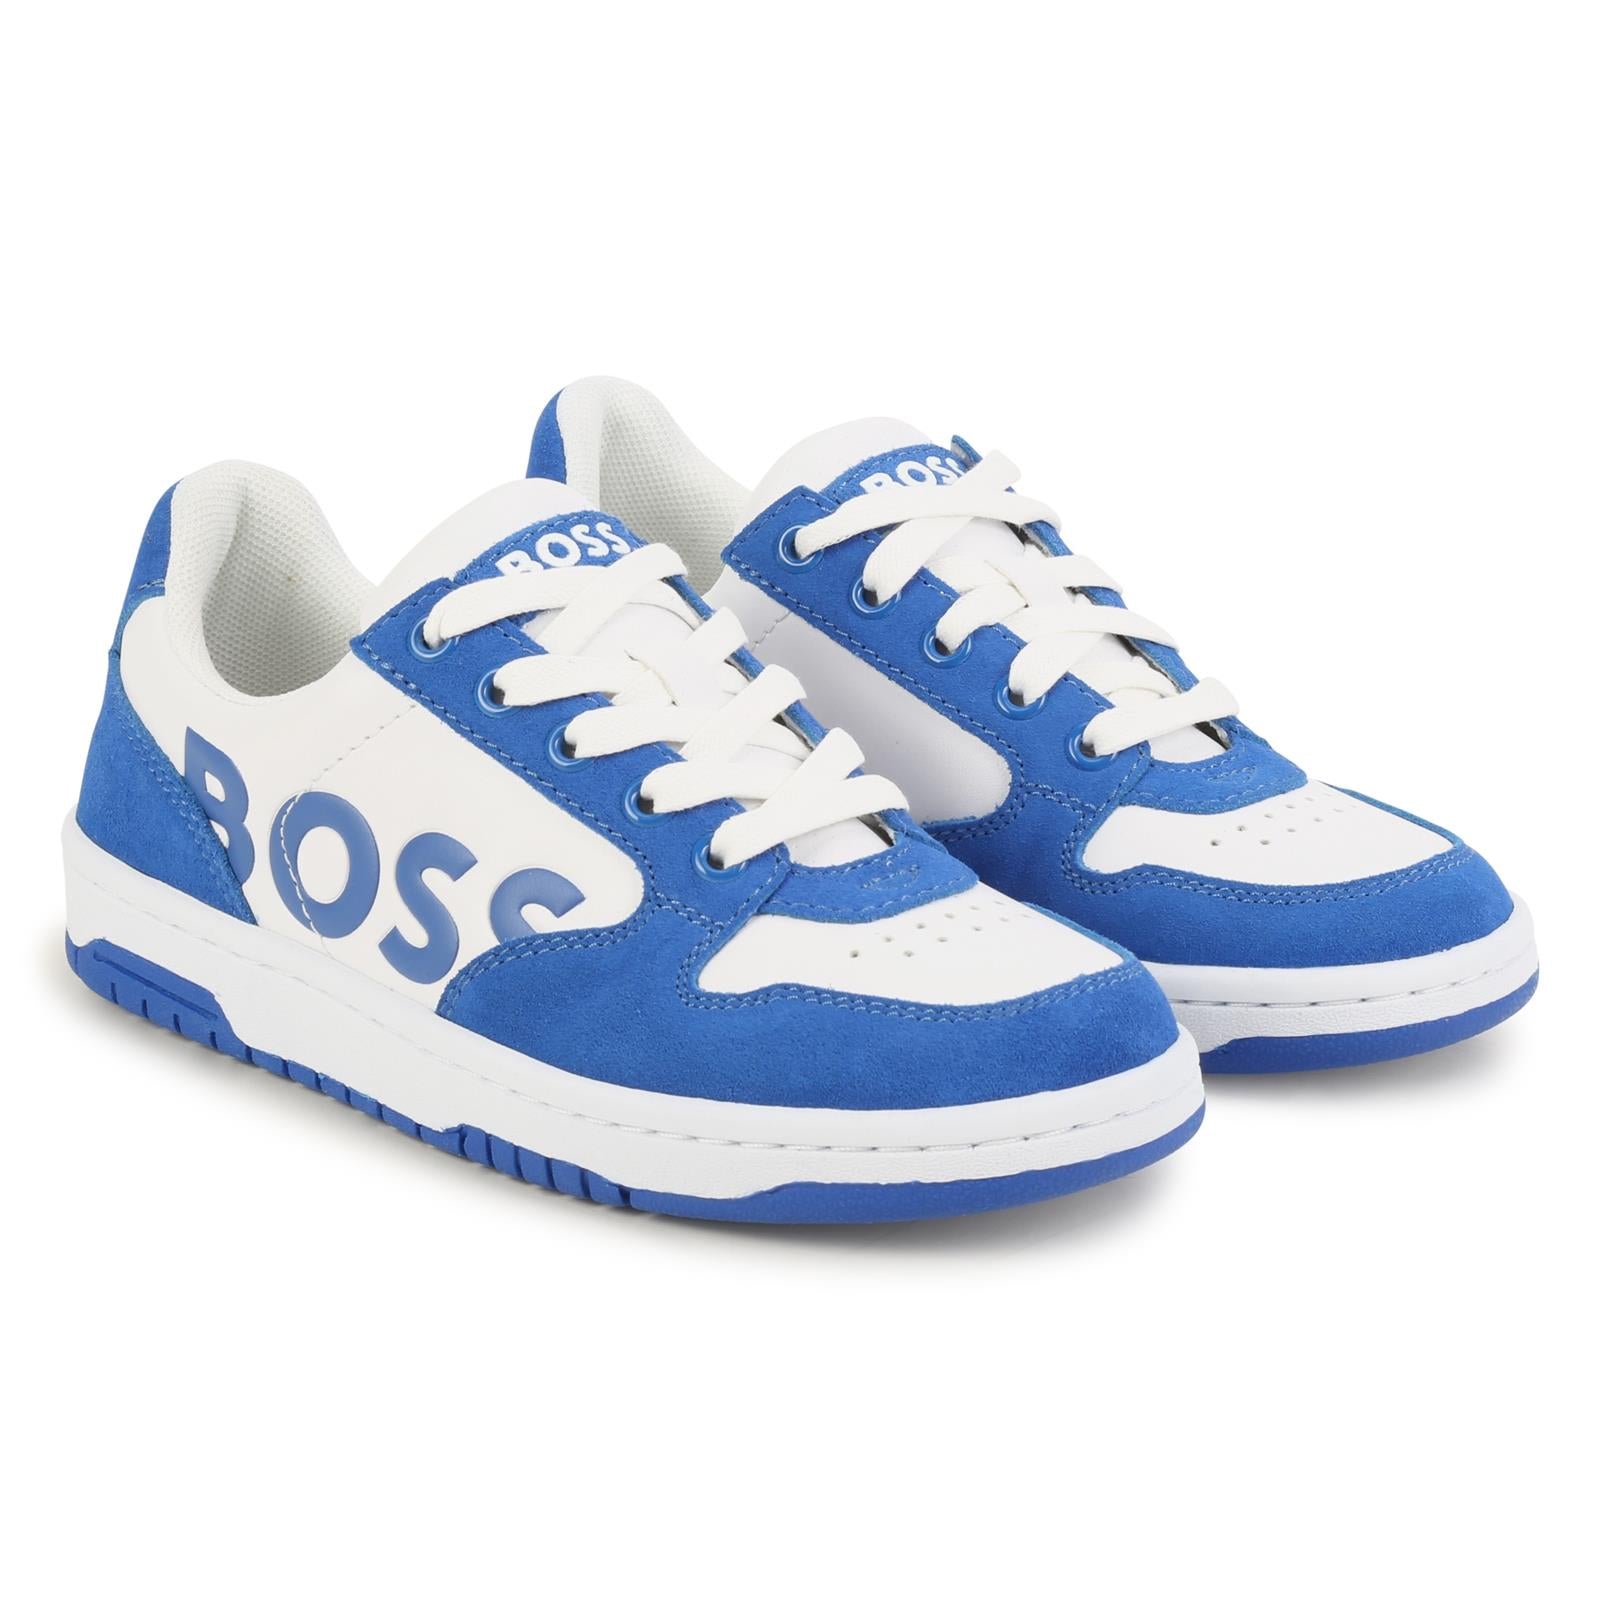 Hugo Boss White & Blue Sneakers